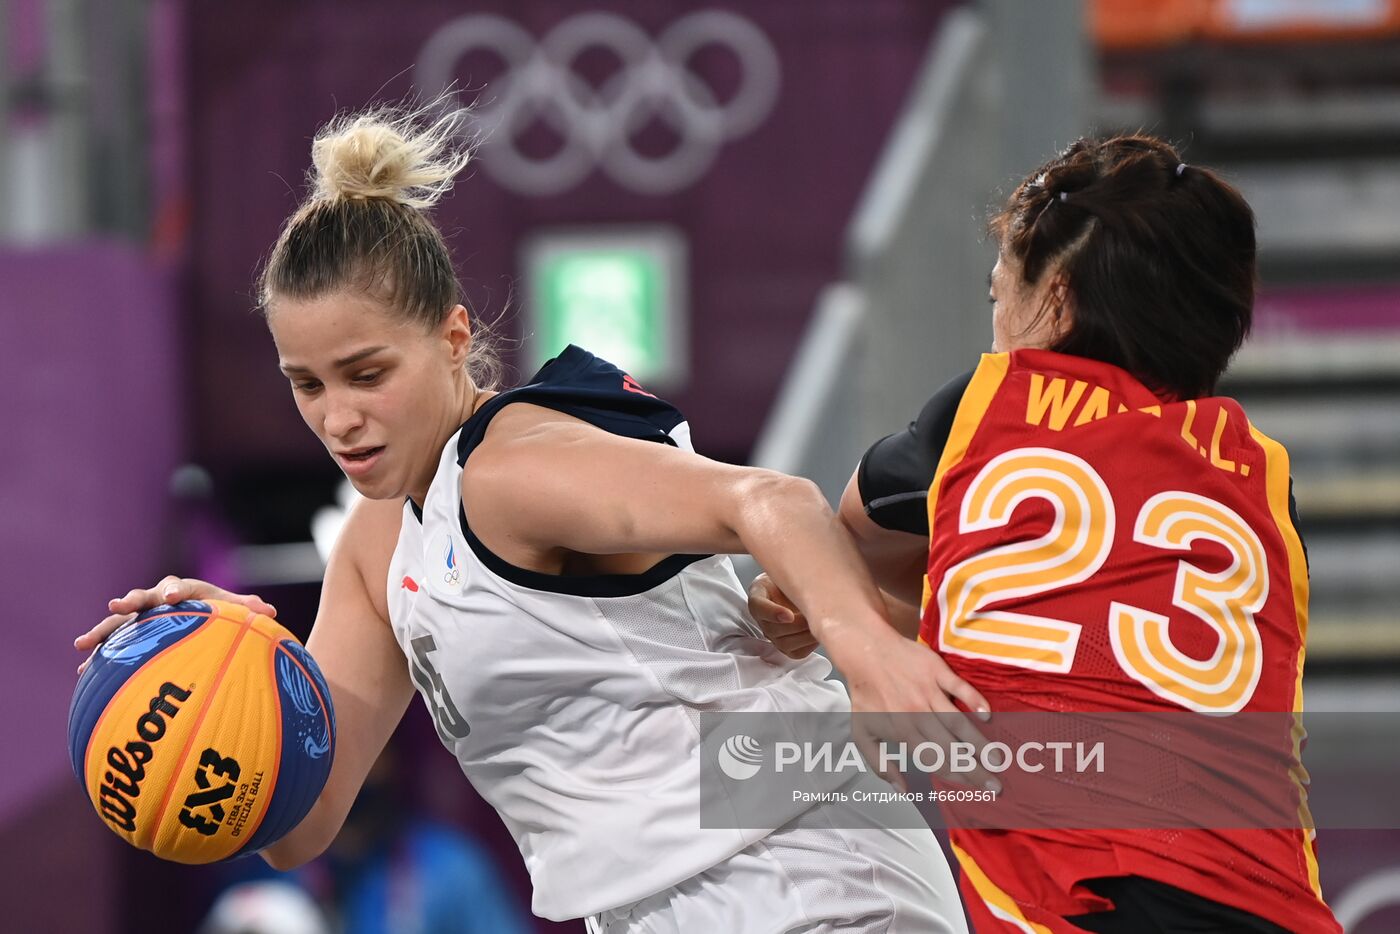 Олимпиада-2020. Баскетбол 3х3. Женщины